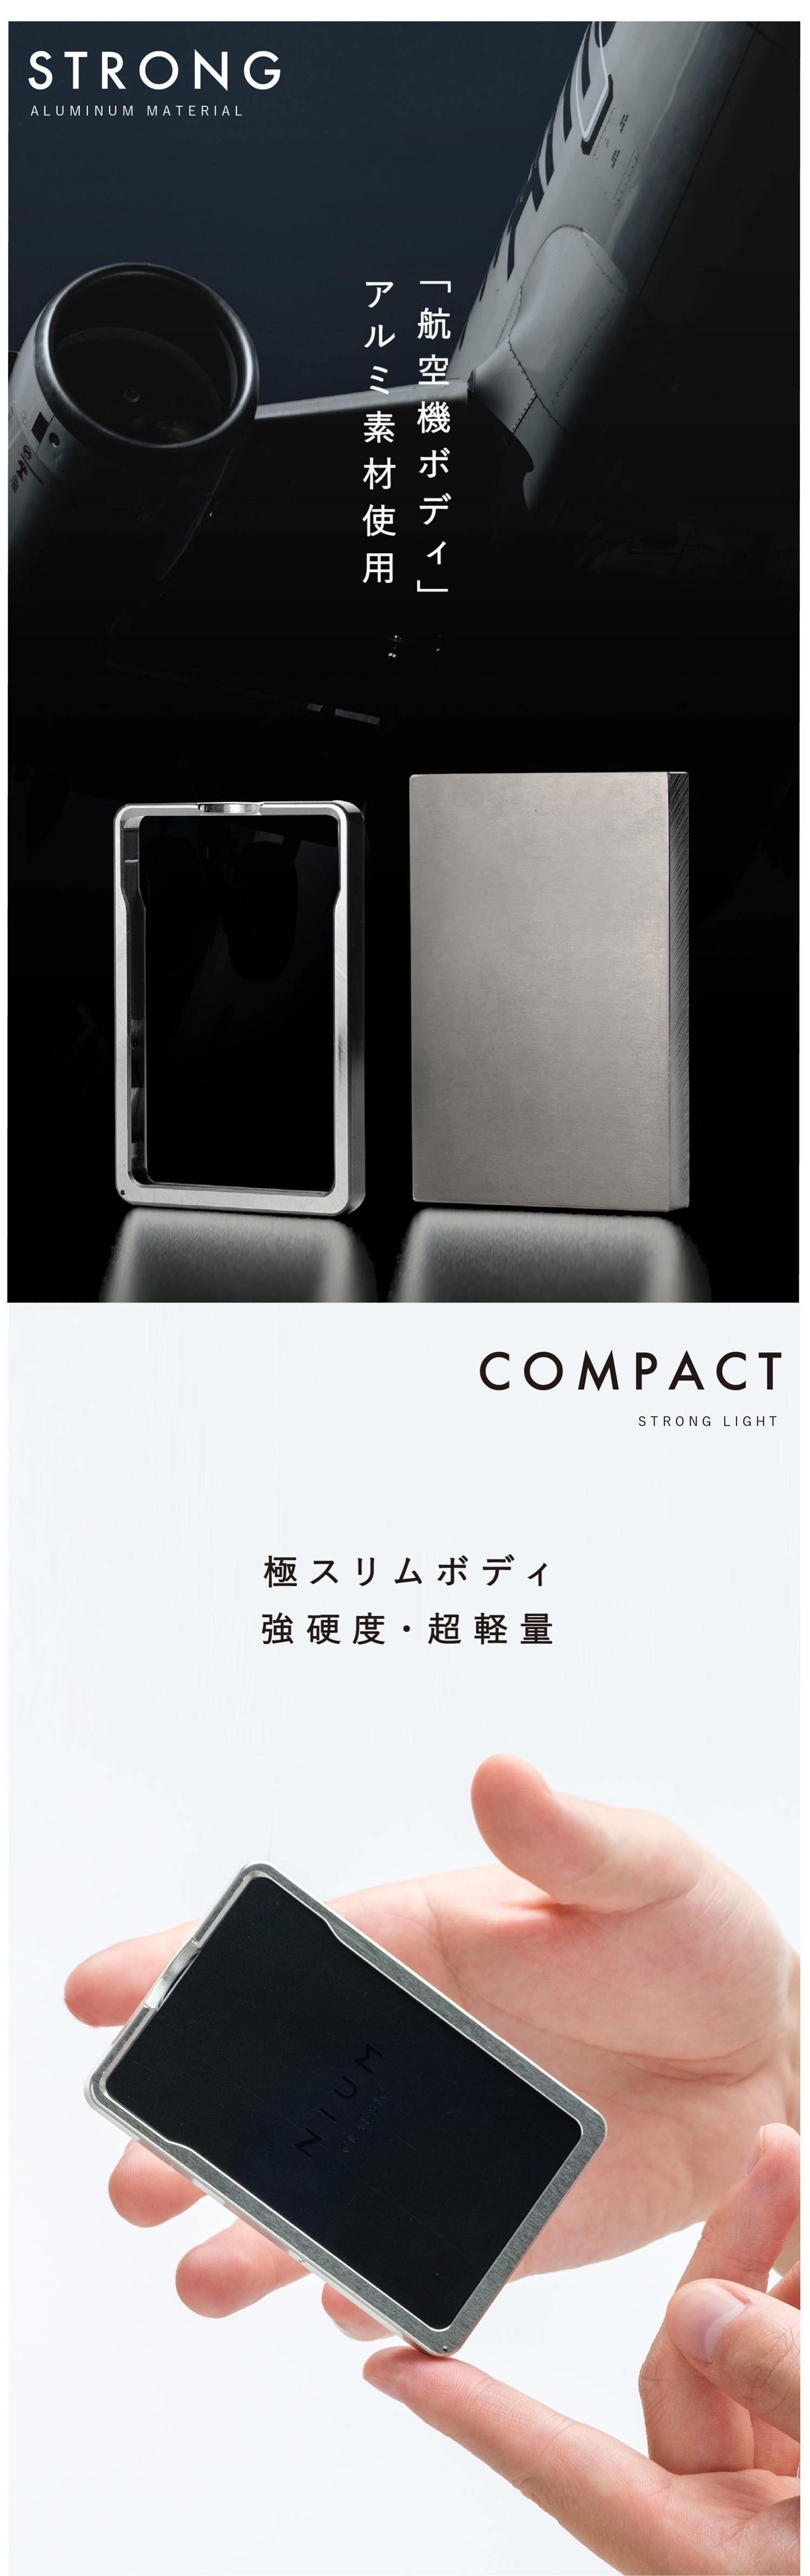 NIUM CLASSIC ニウムクラシック 次世代フレーム型 日本製 アルミ削り出し カードケース ミニマリスト マネークリップカード